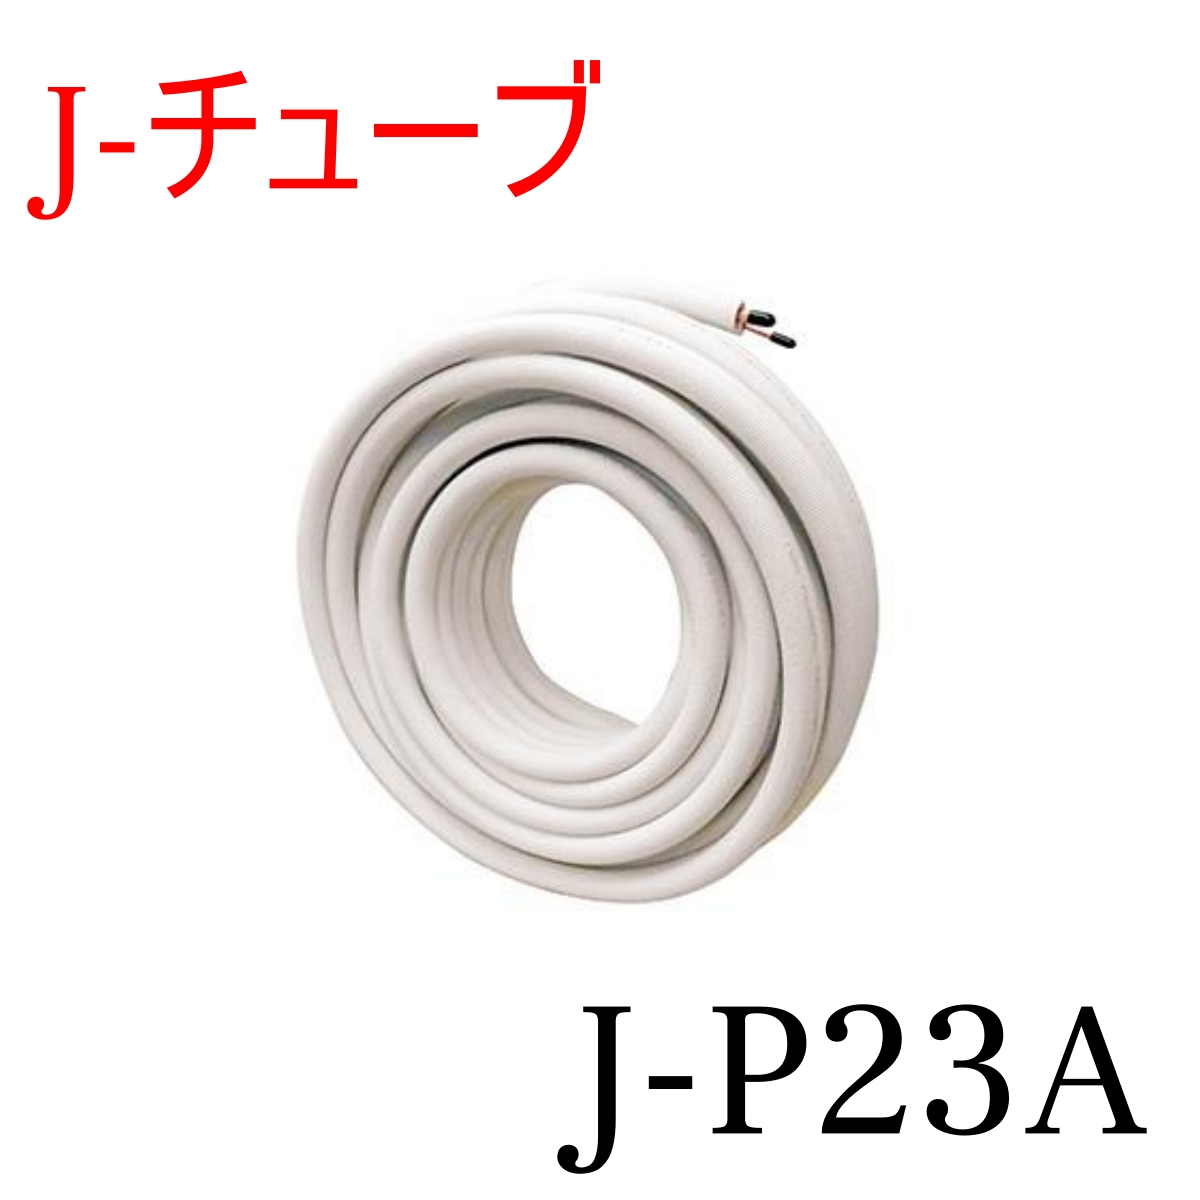 J-P23A Jチューブ 冷媒管 2分3分ペアコイル 20m巻 エアコン用被覆銅管